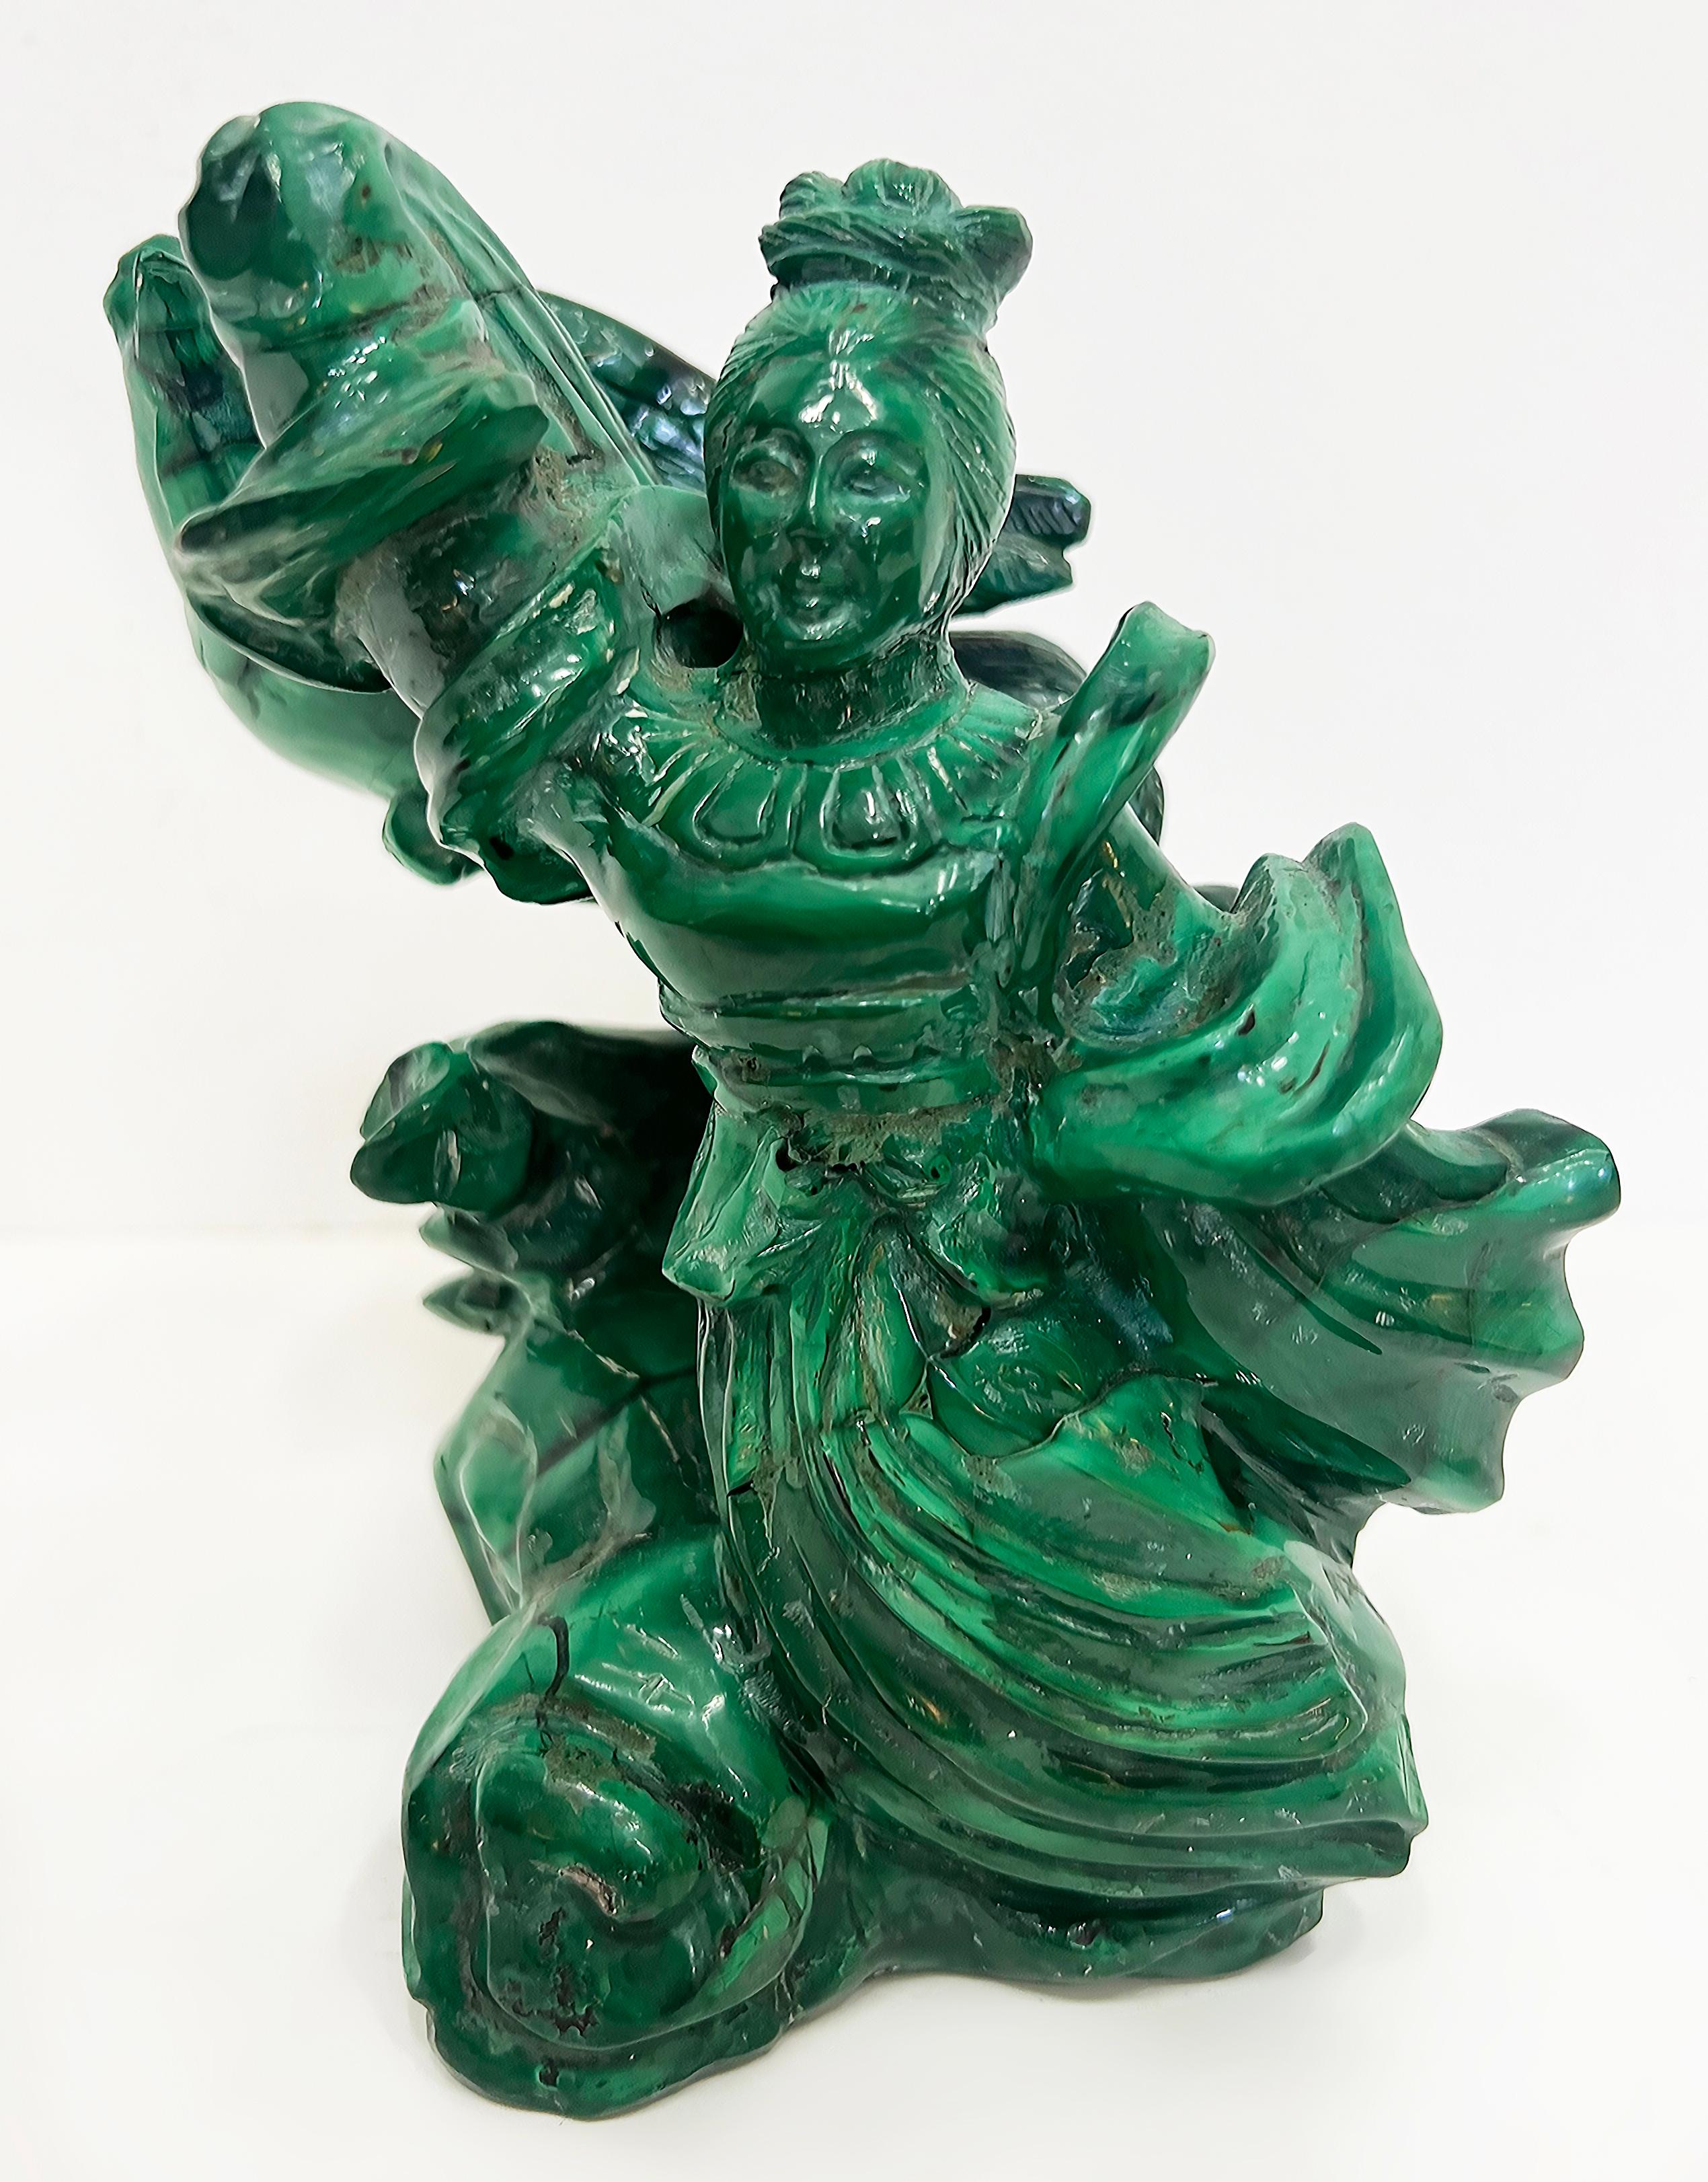 Vintage Chinese geschnitzt Malachit Guan Yin Statue, Phoenix Vogel 

Zum Verkauf angeboten wird eine chinesische handgeschnitzte Malachit Figur eines Guan Yin, umgeben von den Flügeln eines Phoenix bieten, dass hinter ihr ist. Diese Statue ist